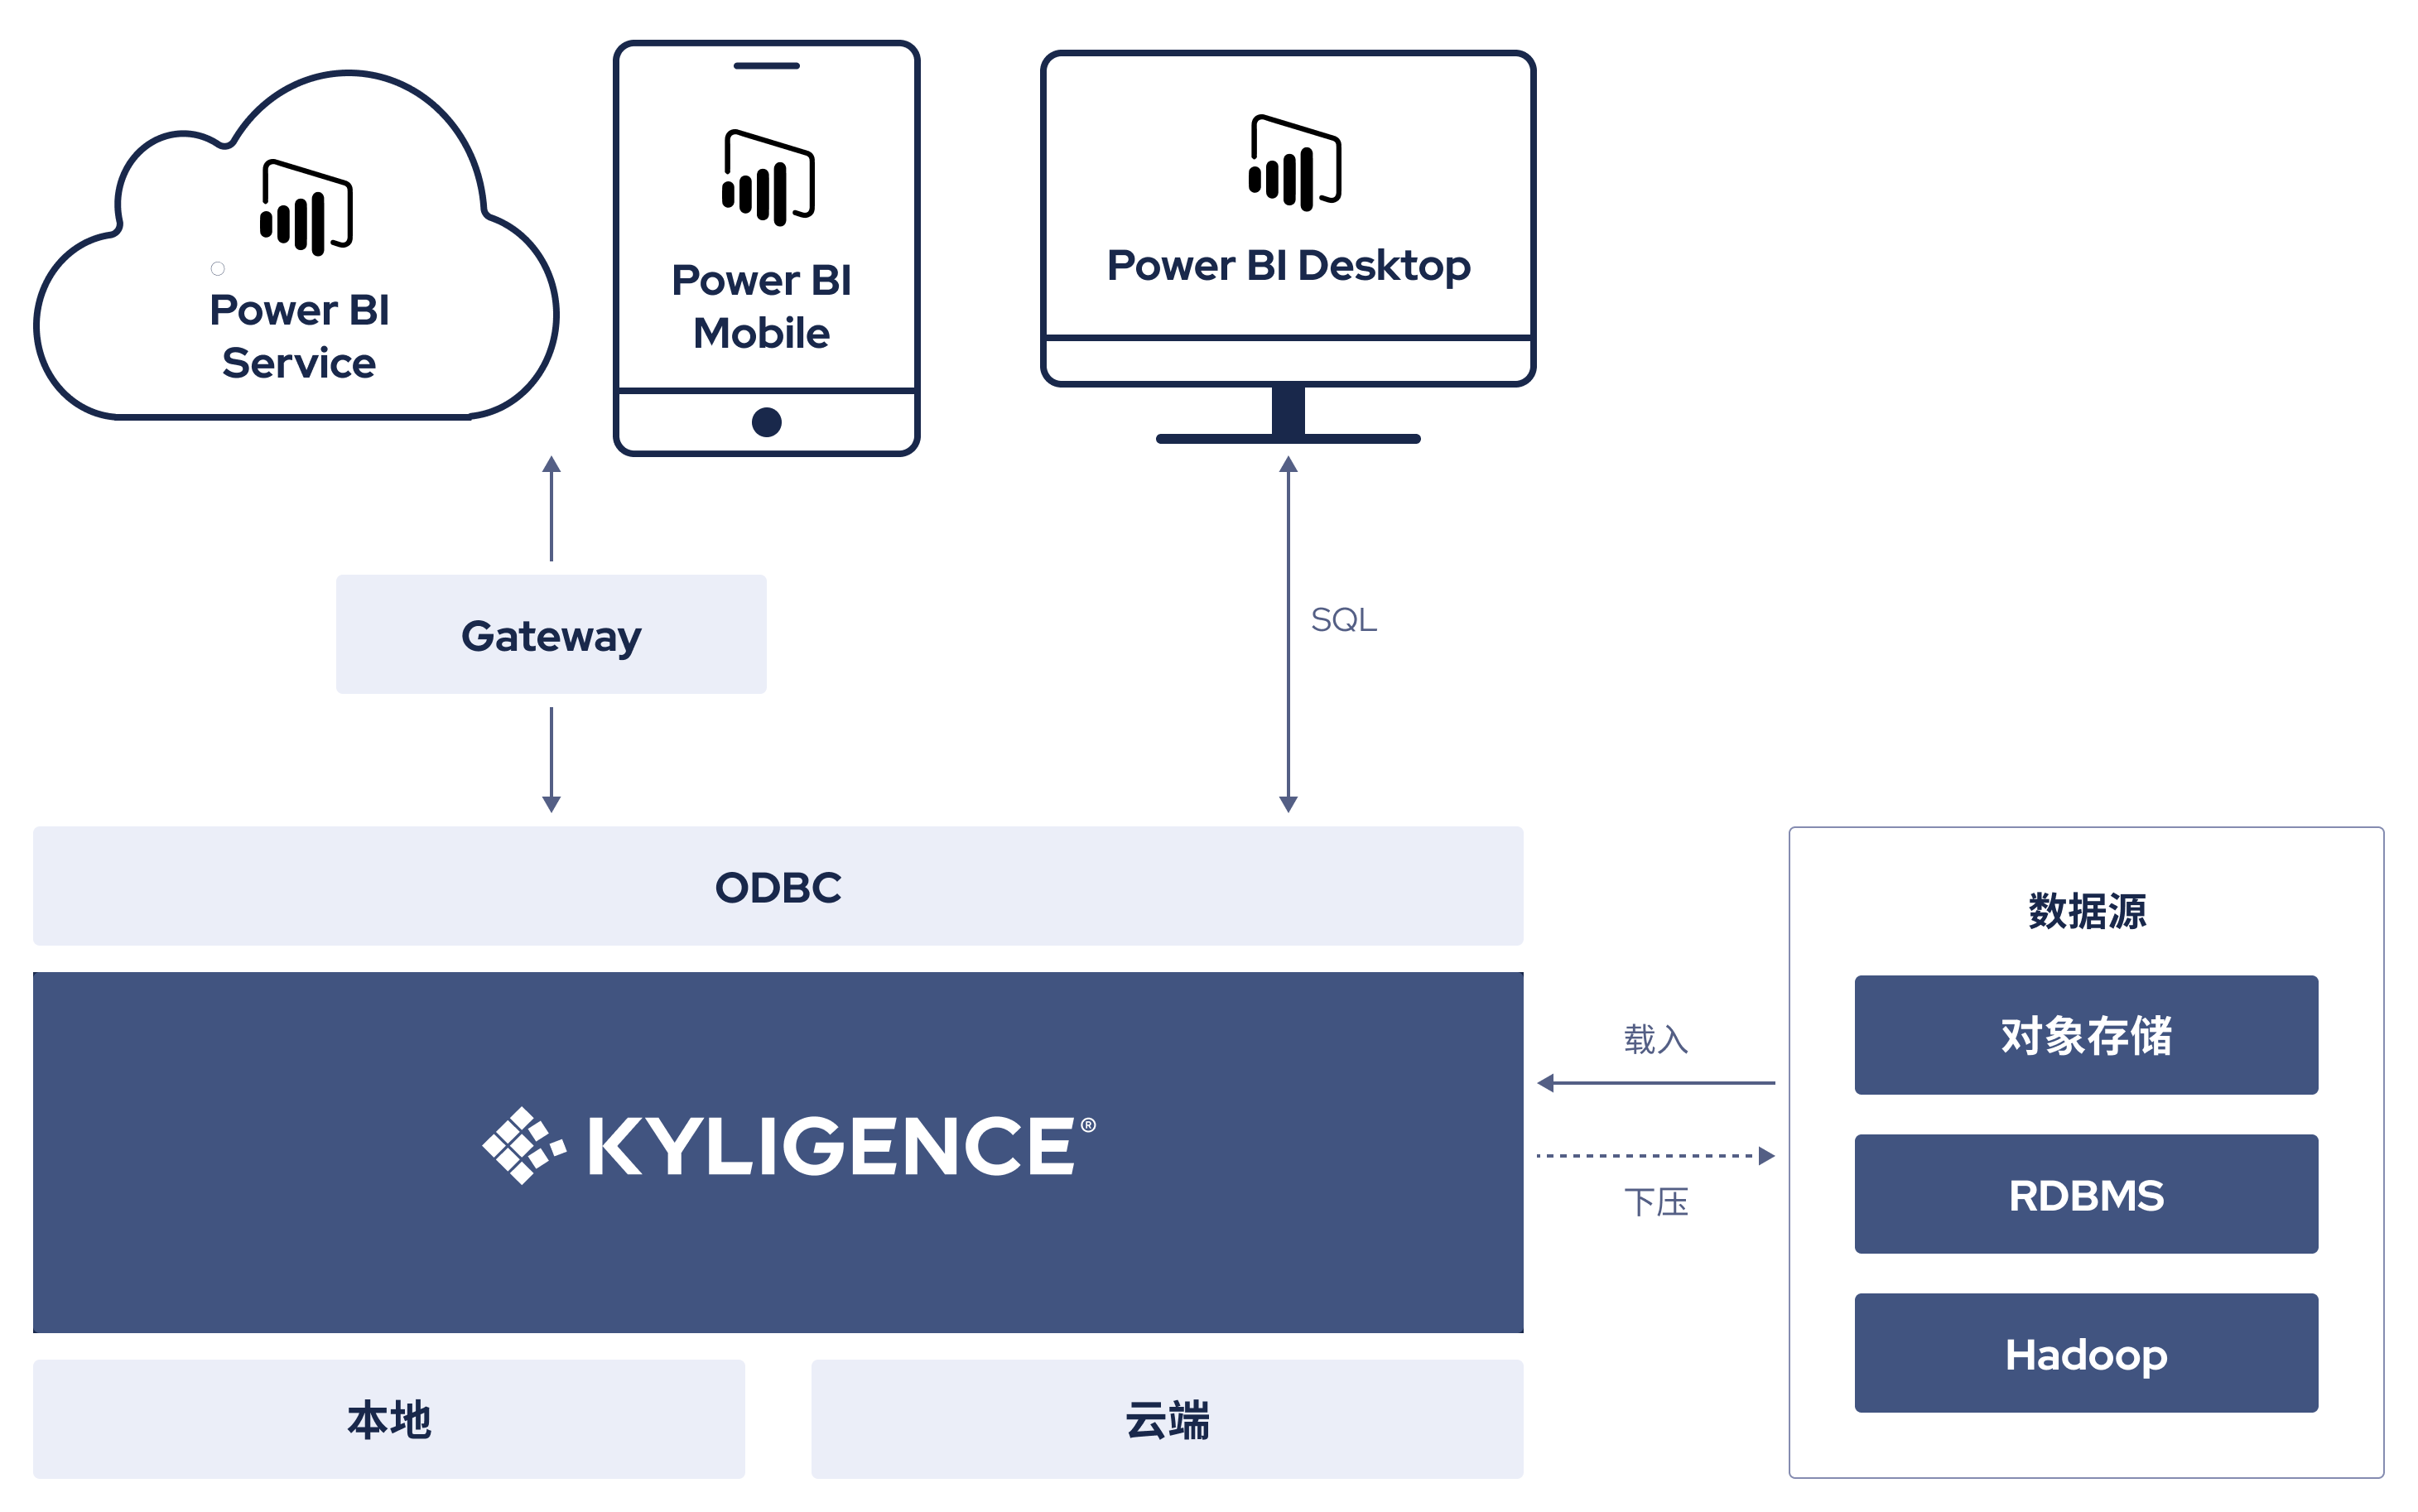 Power BI + Kyligence 架构优势